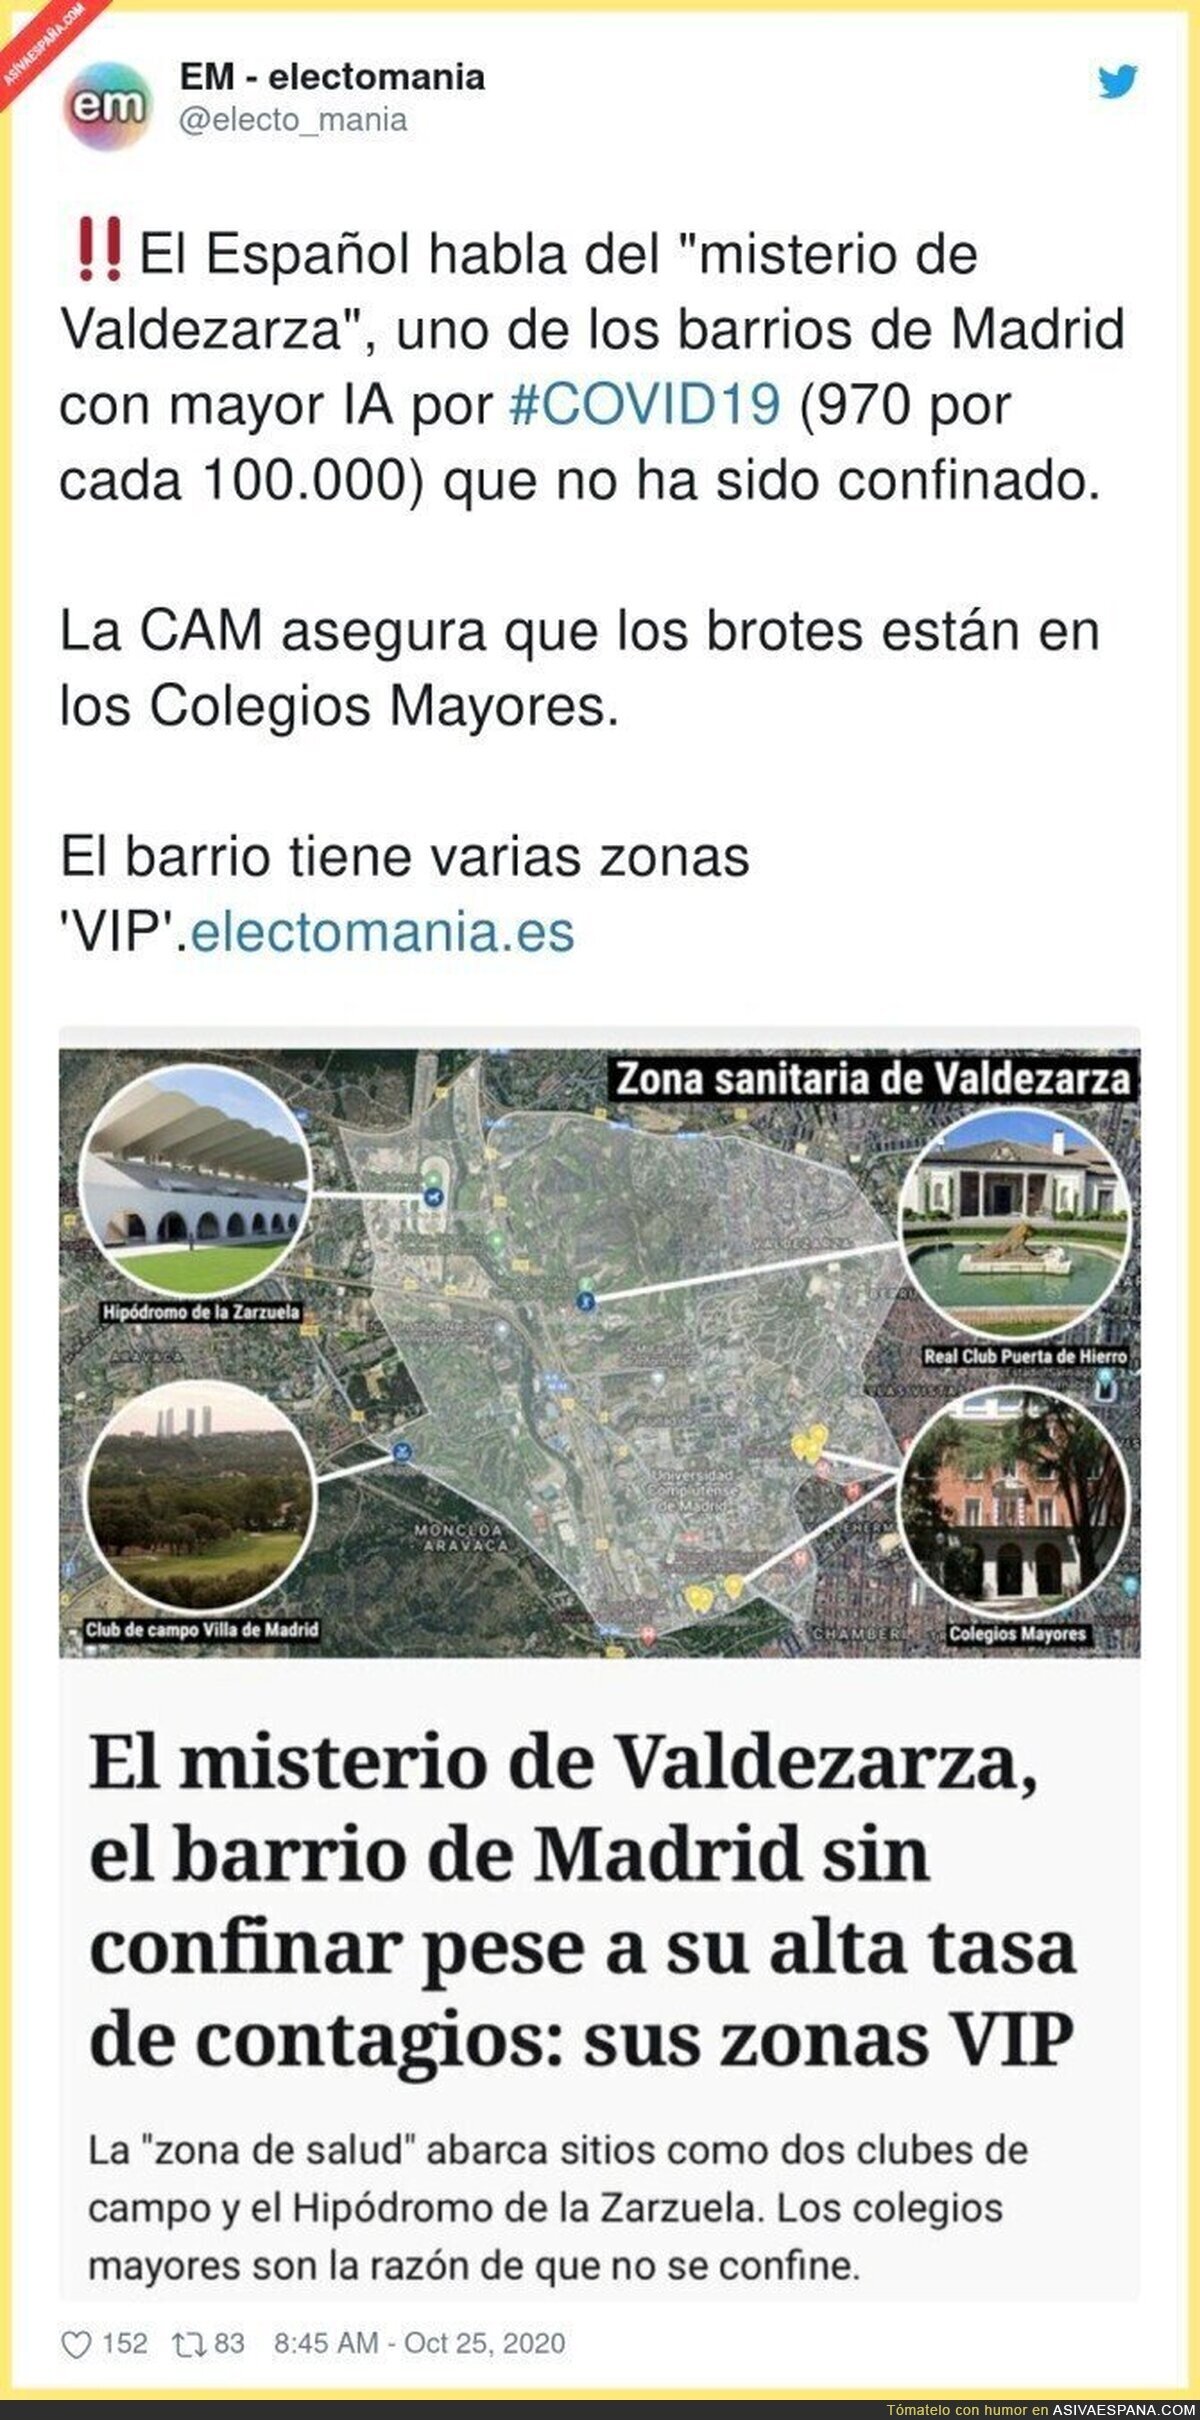 Muy curiosa la zona de Valdezarza en Madrid